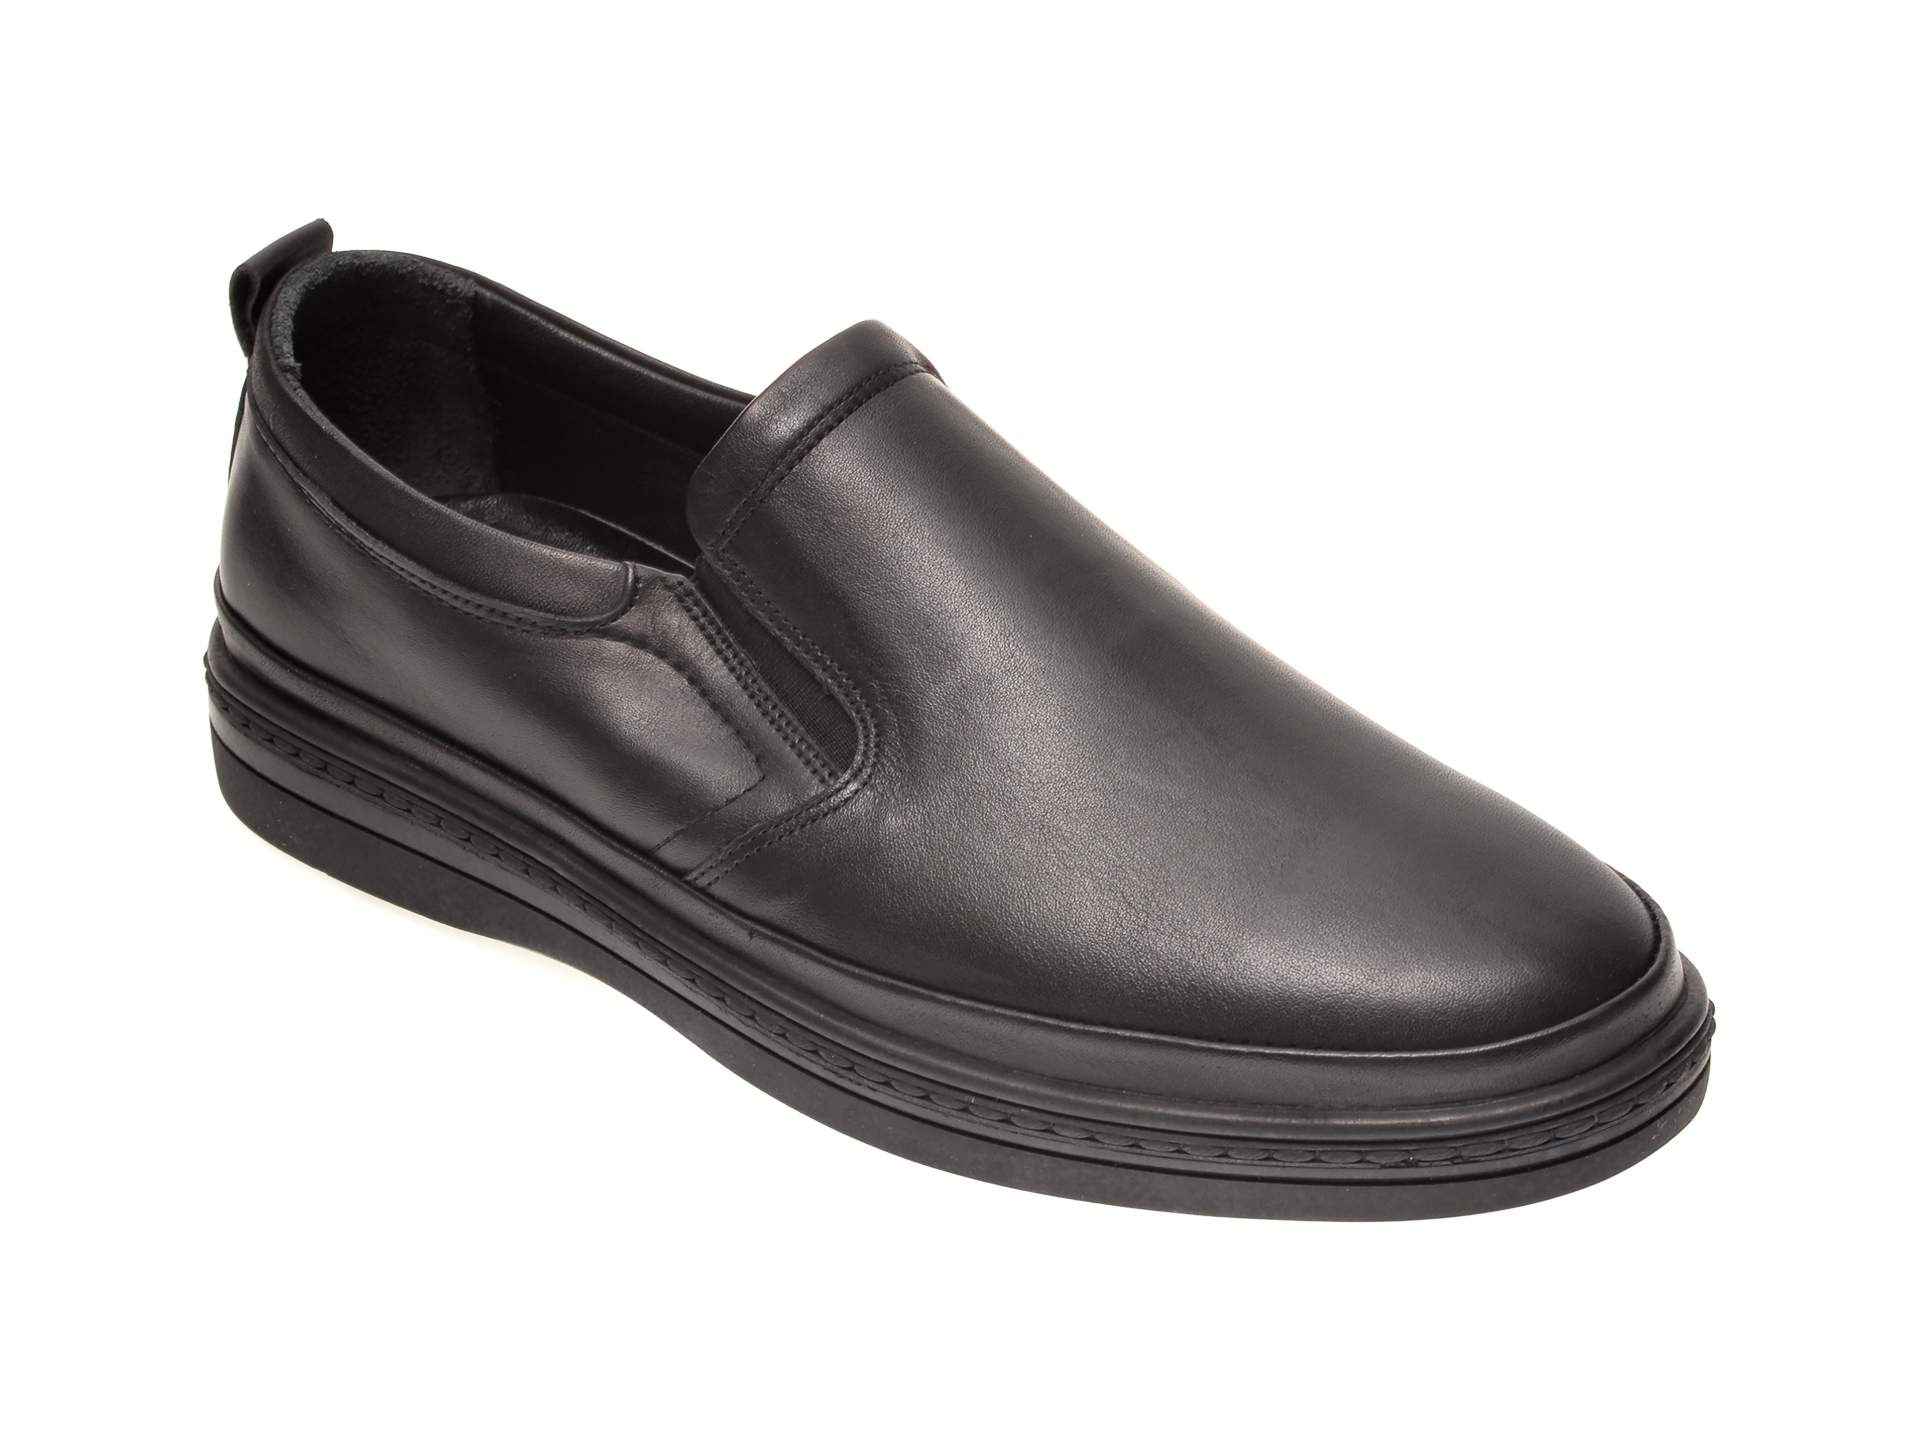 Pantofi OTTER negri, M5741, din piele naturala Otter poza reduceri 2021